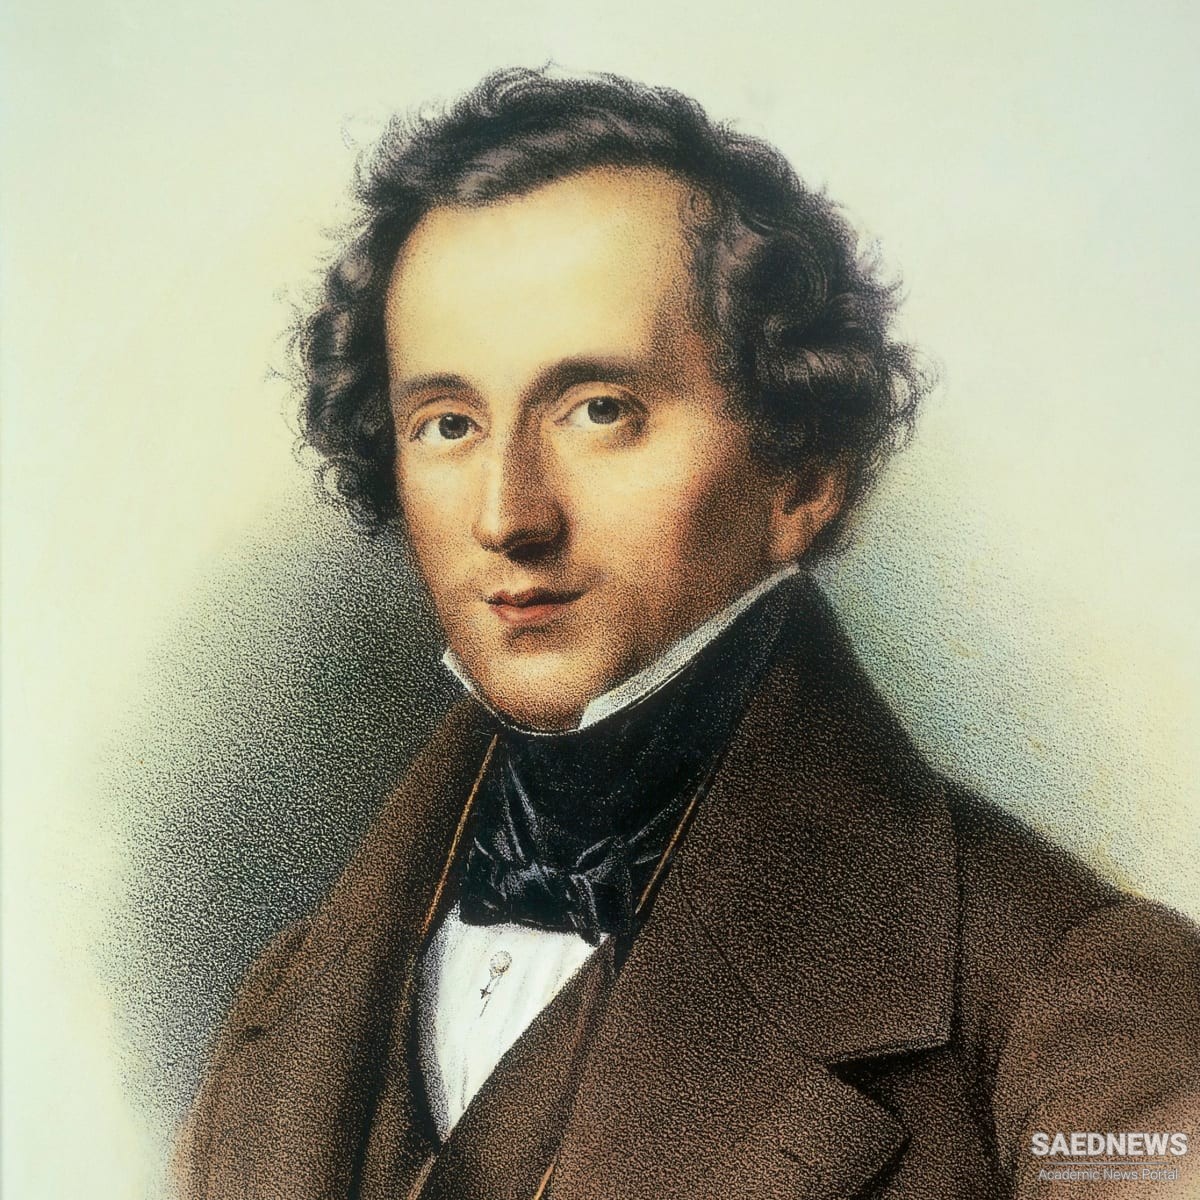 Verrassend genoeg Tegenstander behandeling Jakob Ludwig Felix Mendelssohn-Bartholdy | saednews